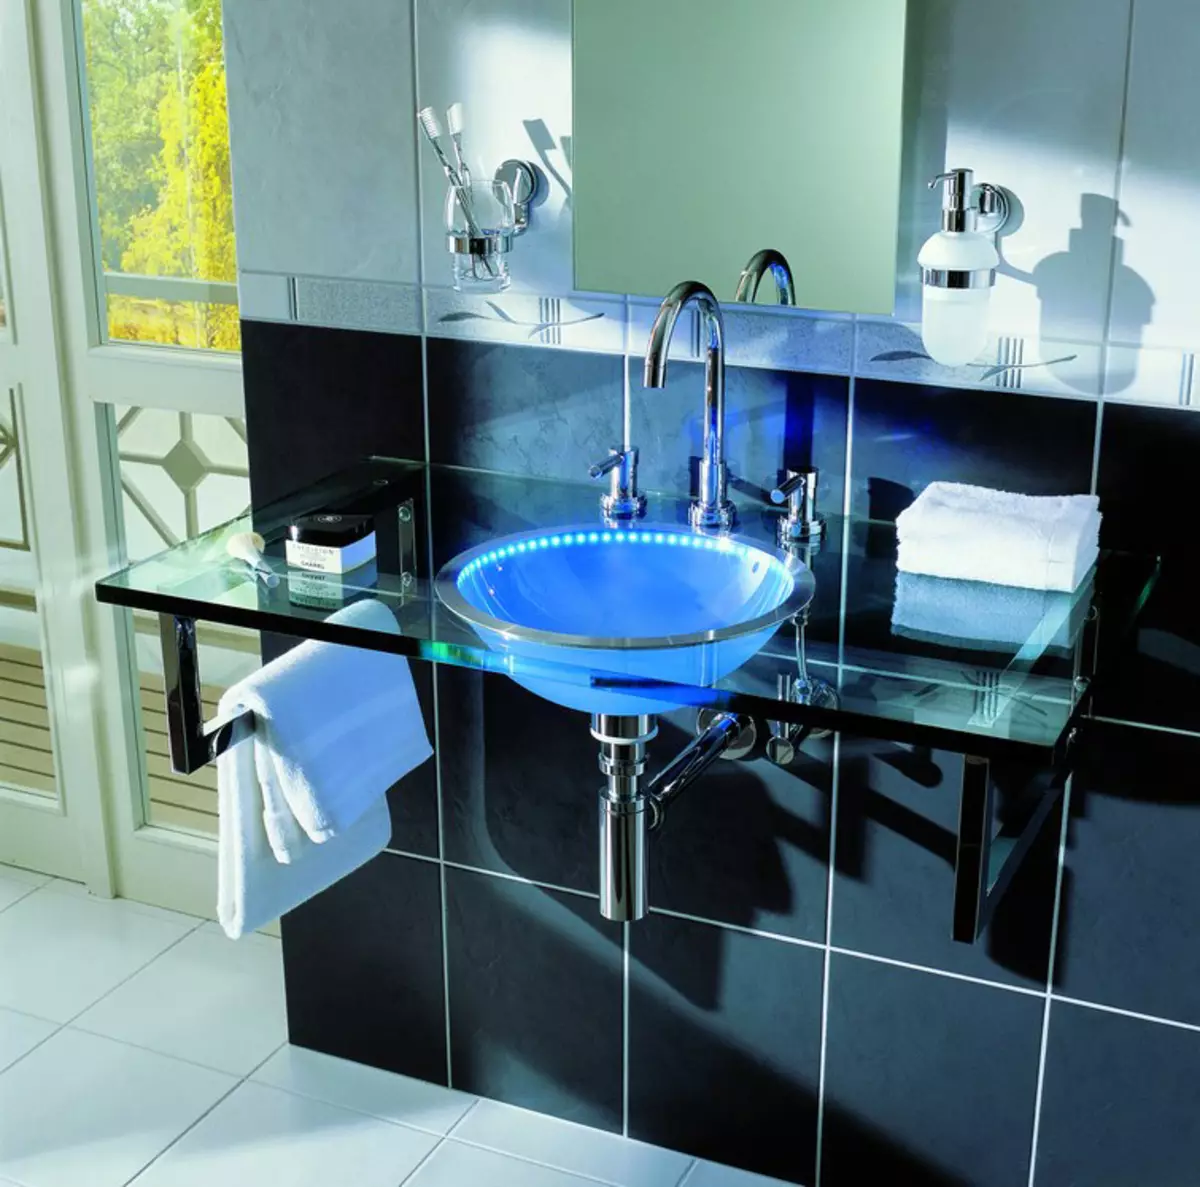 حوض الاستحمام: طاولات الحمام الأصناف، نظرة عامة على العلامة التجارية IKEA وغيرها، المدرجات الخشبية وغيرها 10150_28